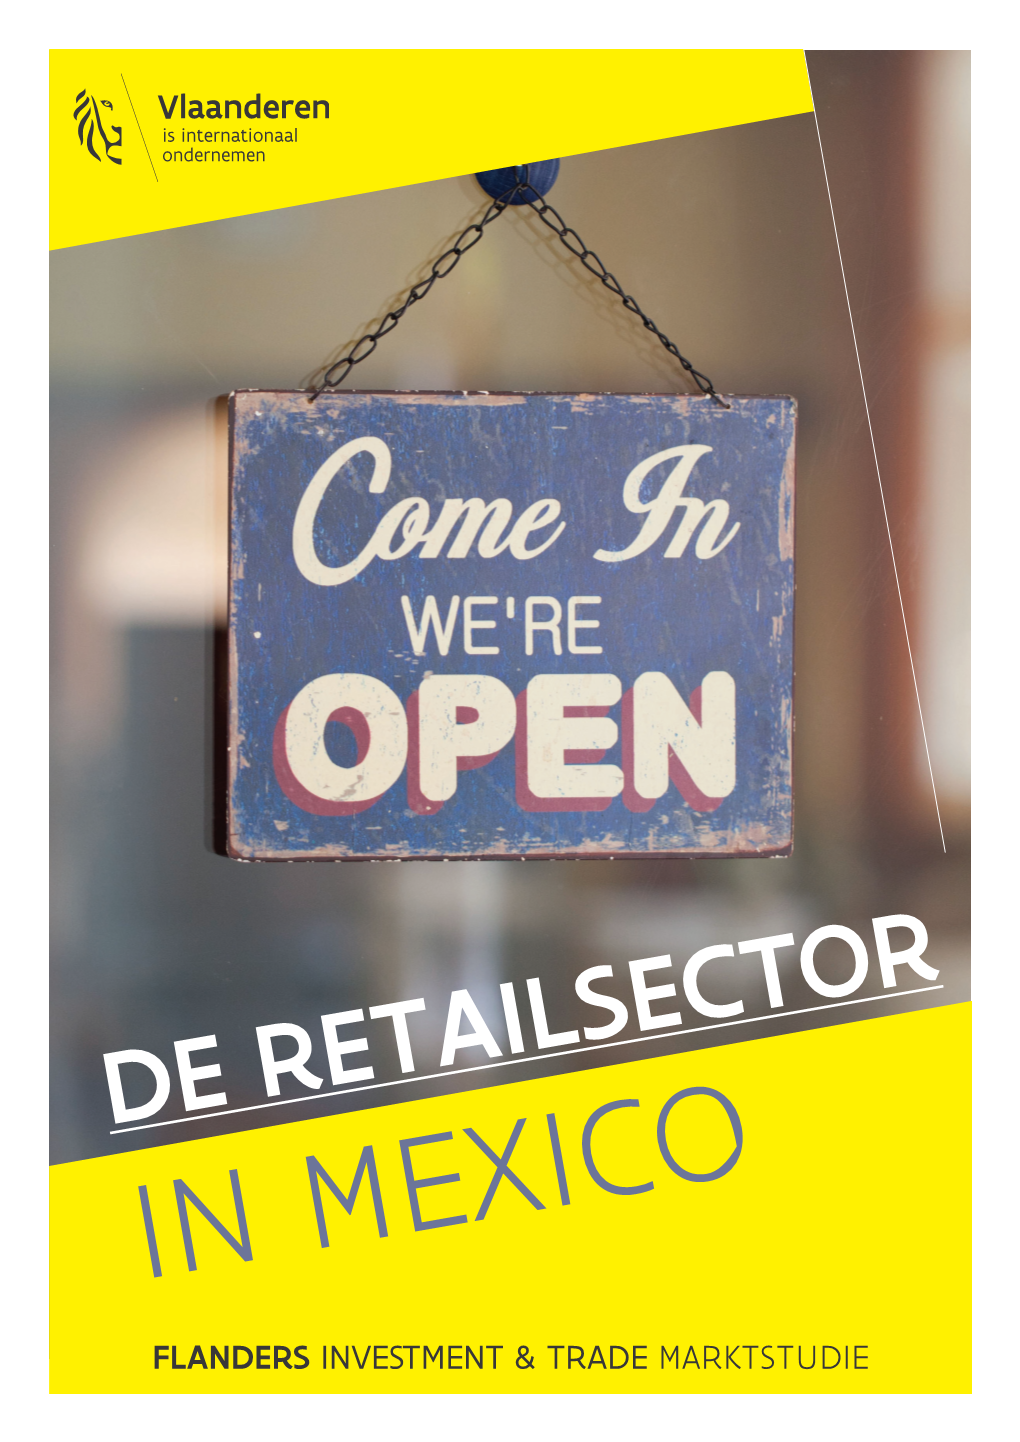 DE RETAILSECTOR in MEXICO FLANDERS INVESTMENT & TRADE MARKTSTUDIE Marktstudie